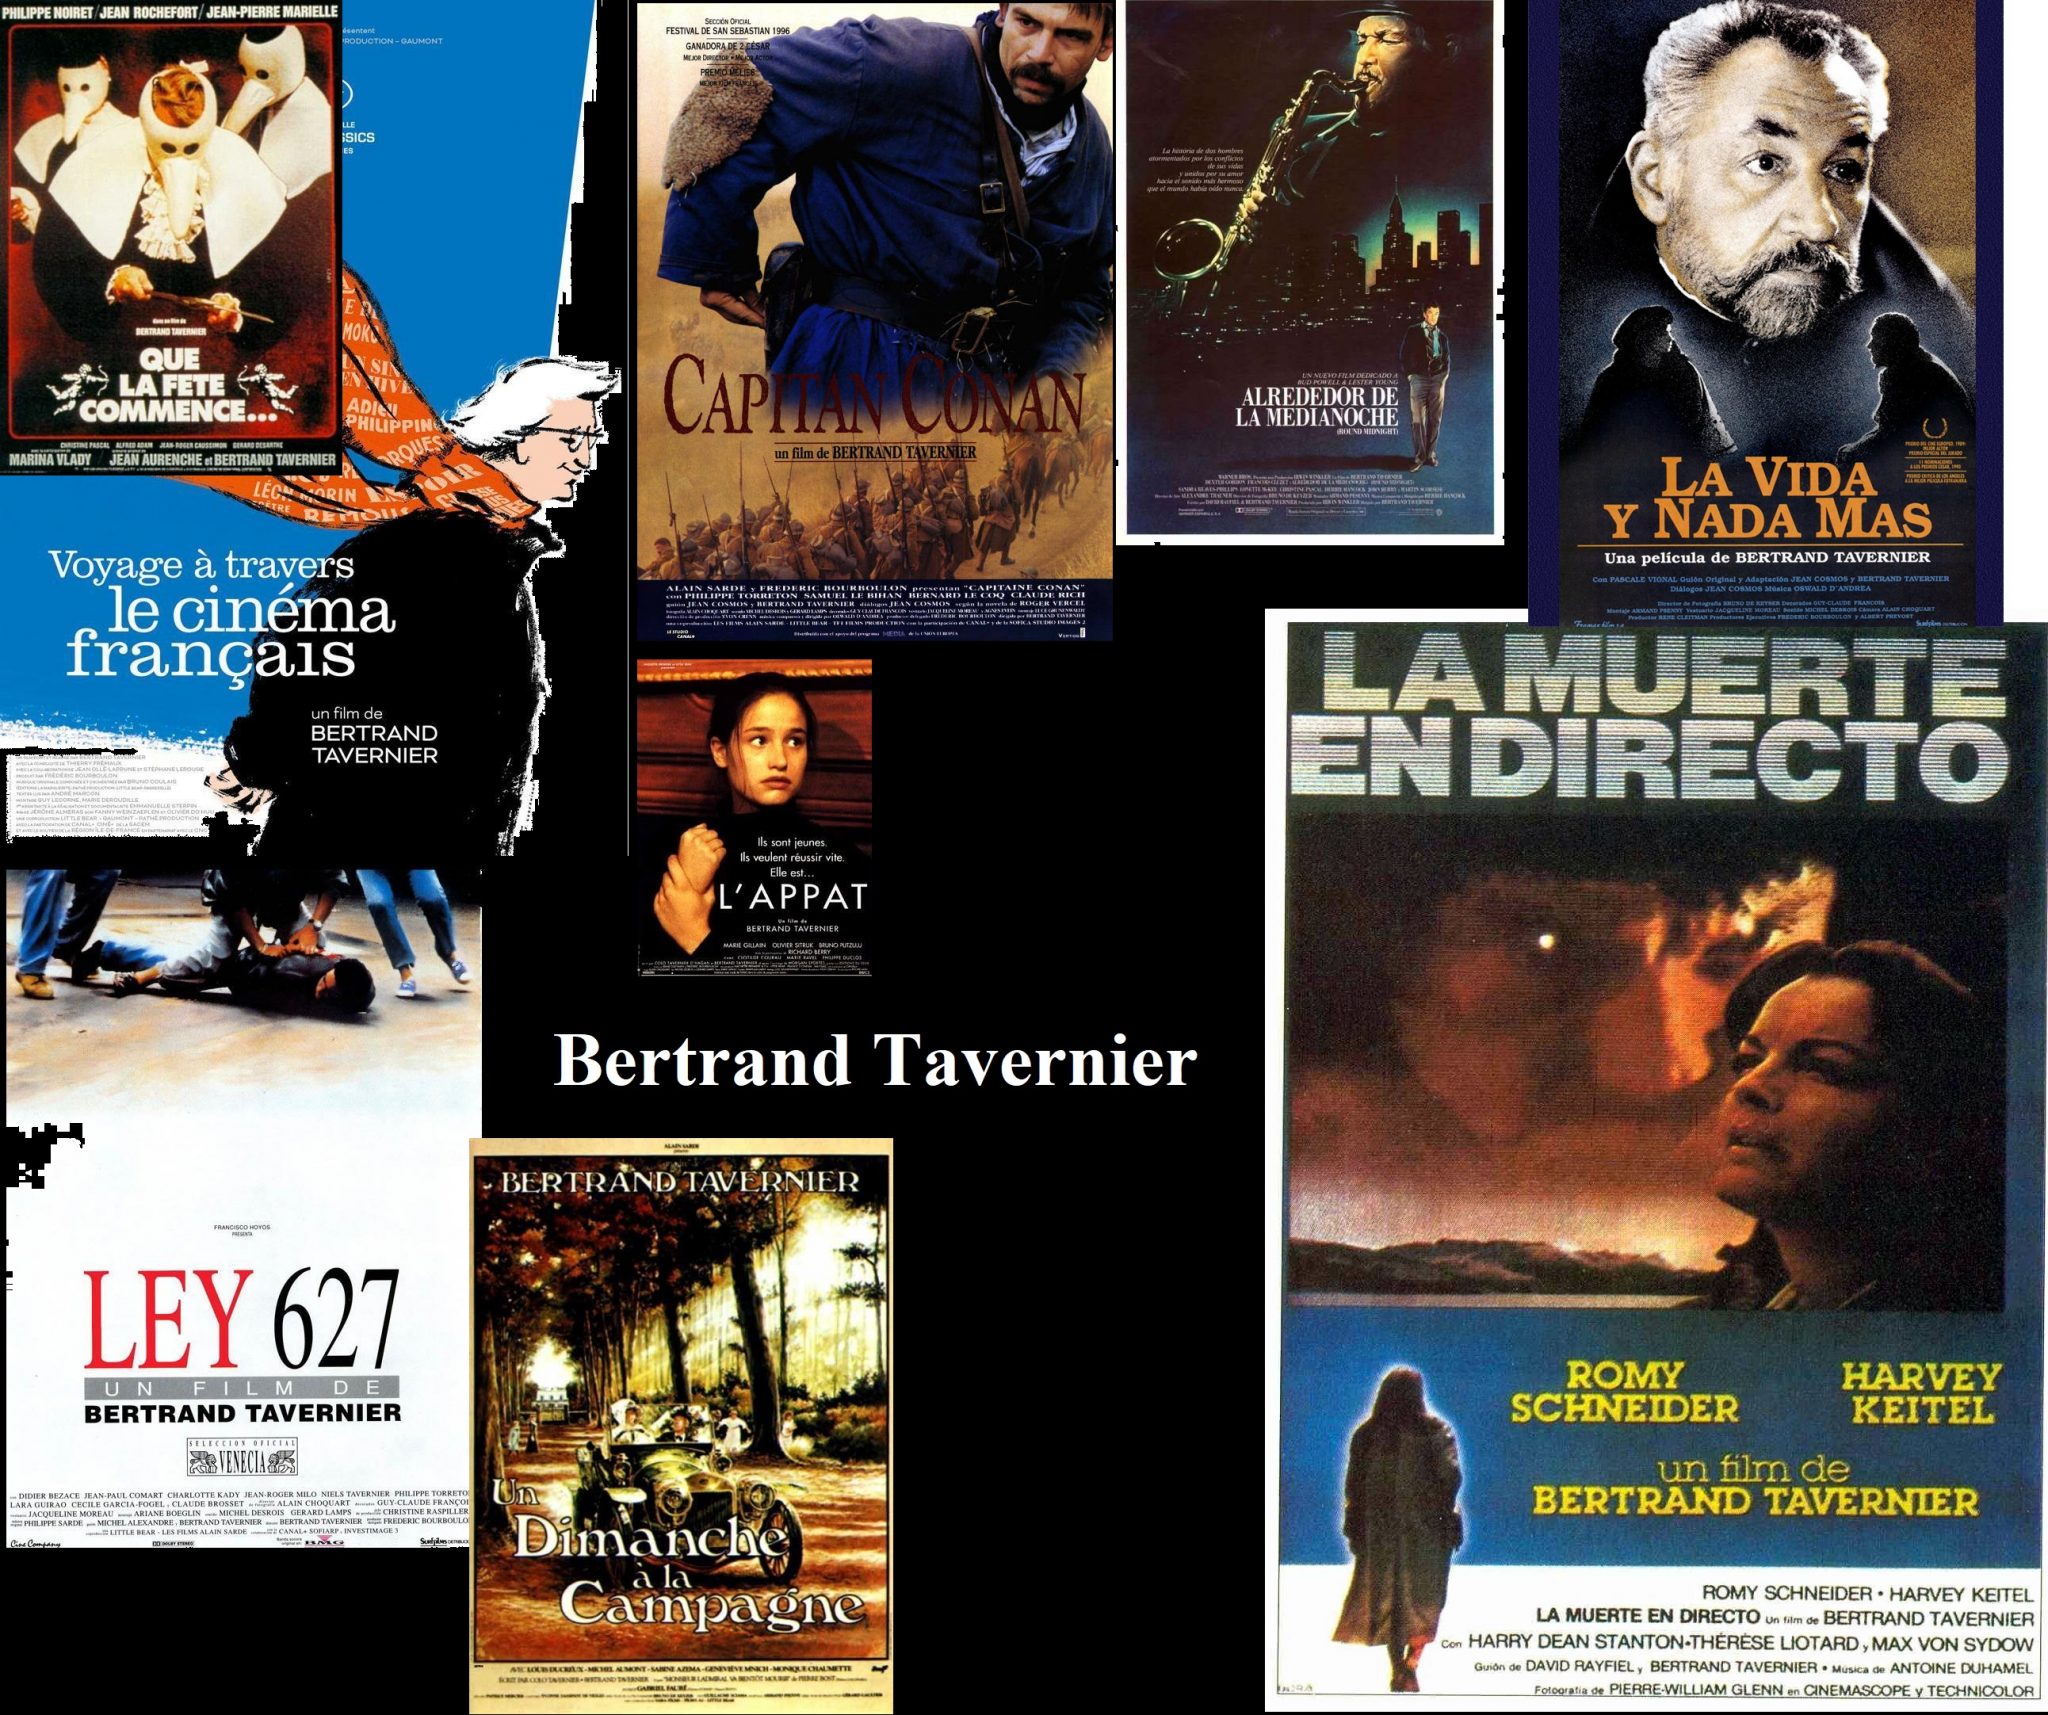 Ayer falleció Bertrand Tavernier